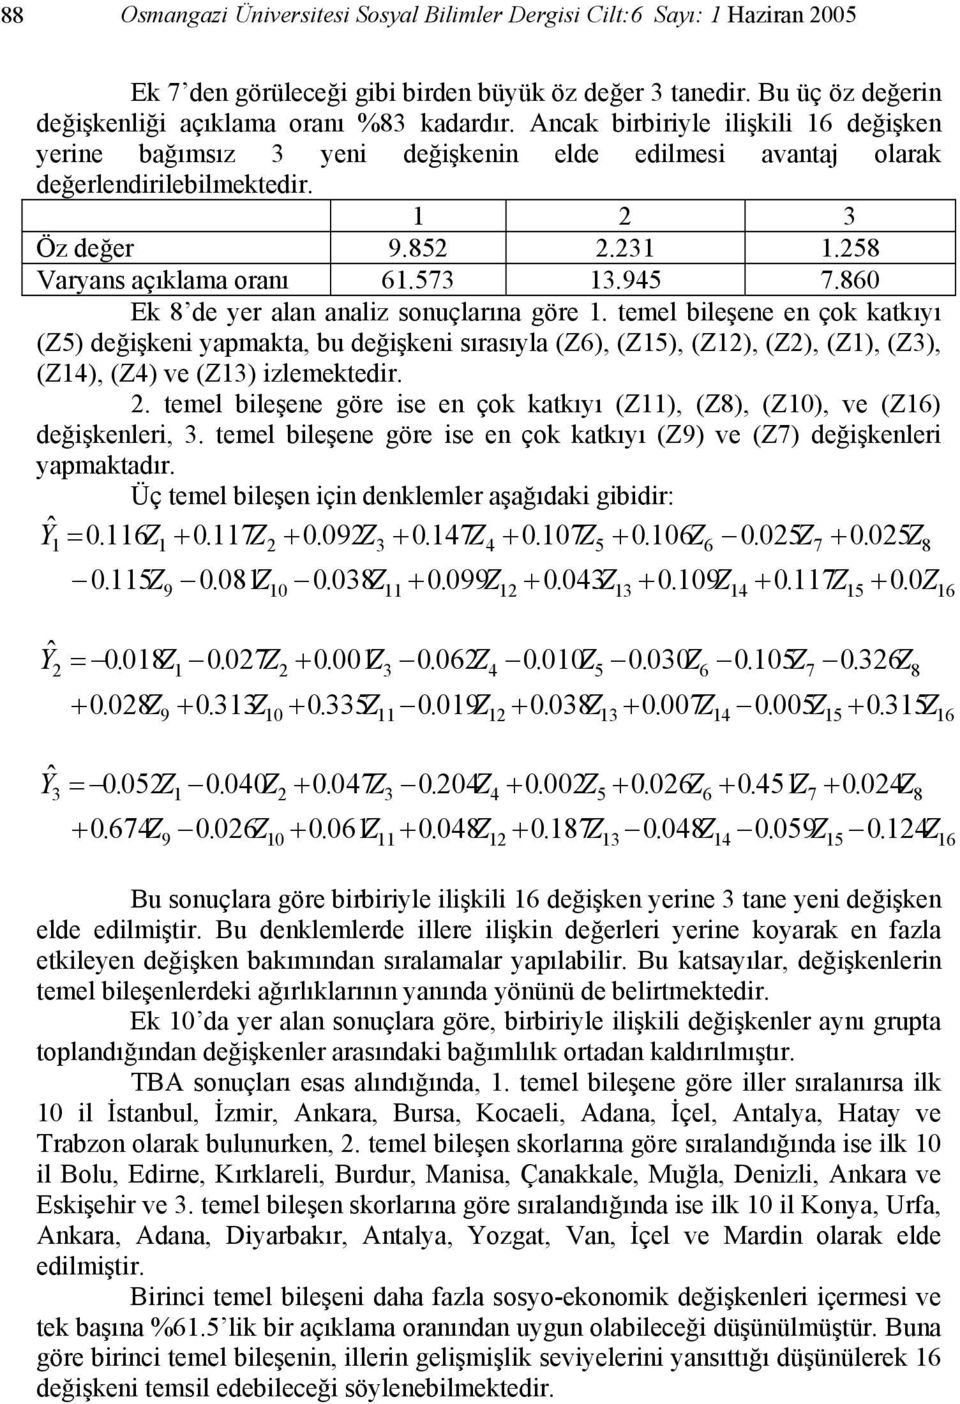 860 Ek 8 de yer alan analiz sonuçlarına göre. temel bileşene en çok katkıyı (Z5) değişkeni yapmakta, bu değişkeni sırasıyla (Z6), (Z5), (Z), (Z), (Z), (Z3), (Z4), (Z4) ve (Z3) izlemektedir.